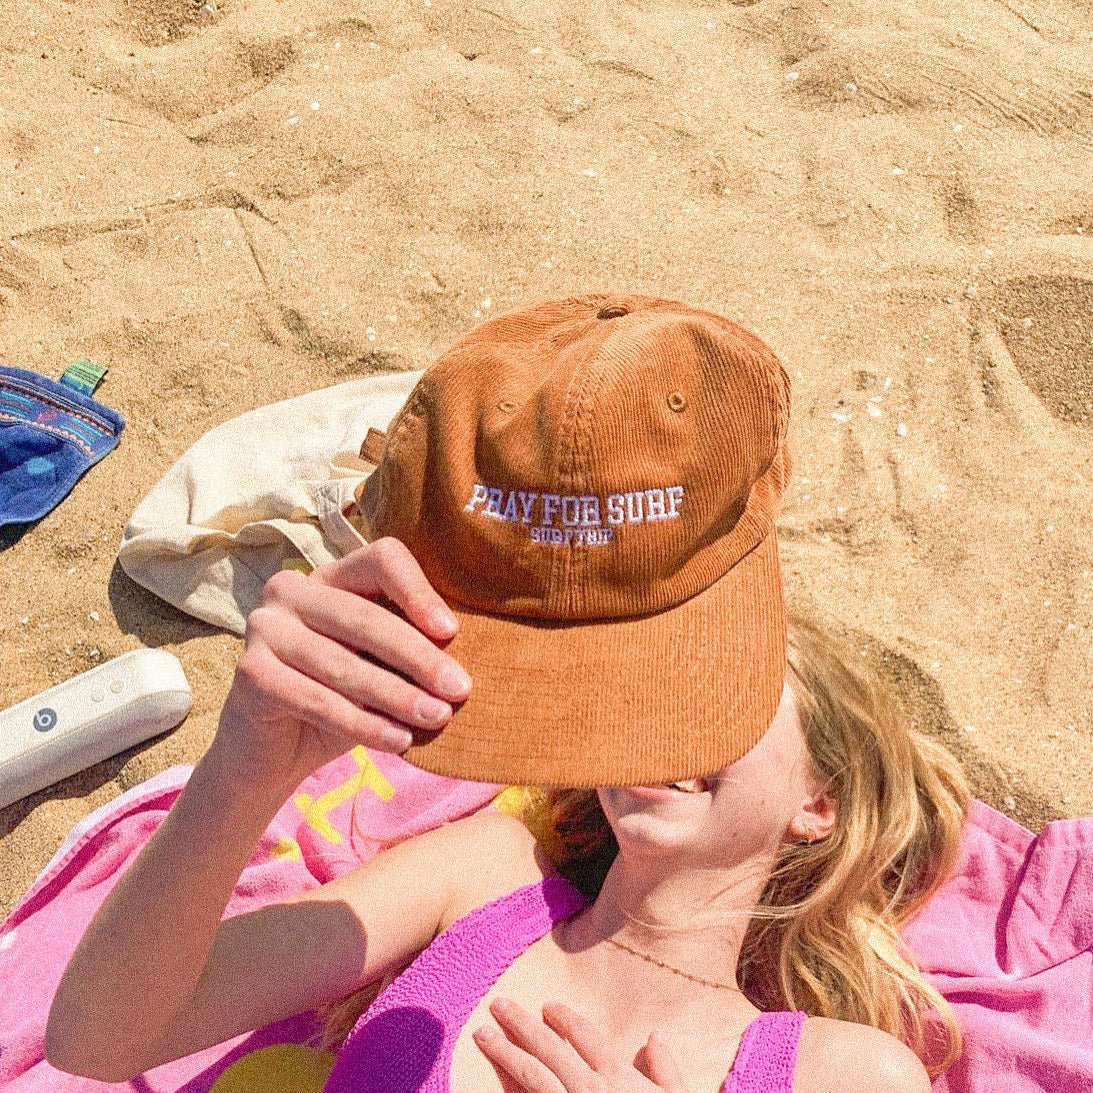 Pray For Surf Trucker Hat – Crab & Cleek